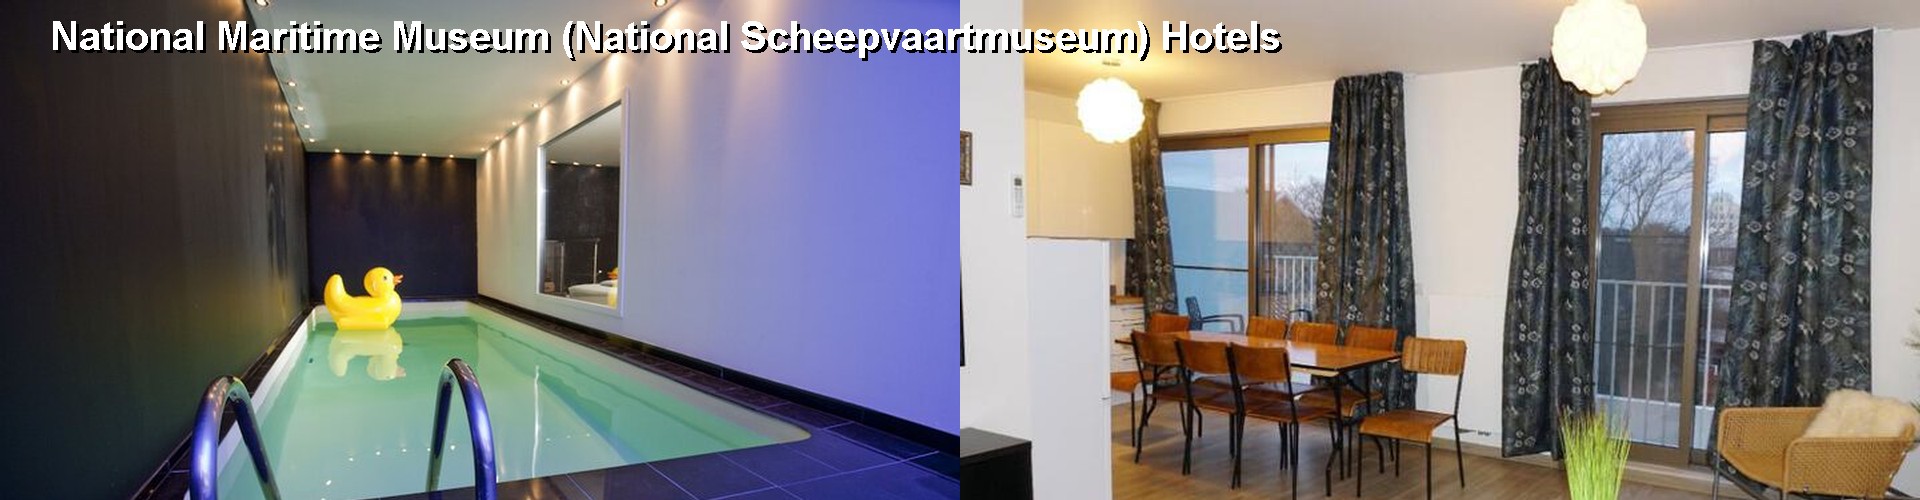 5 Best Hotels near National Maritime Museum (National Scheepvaartmuseum)